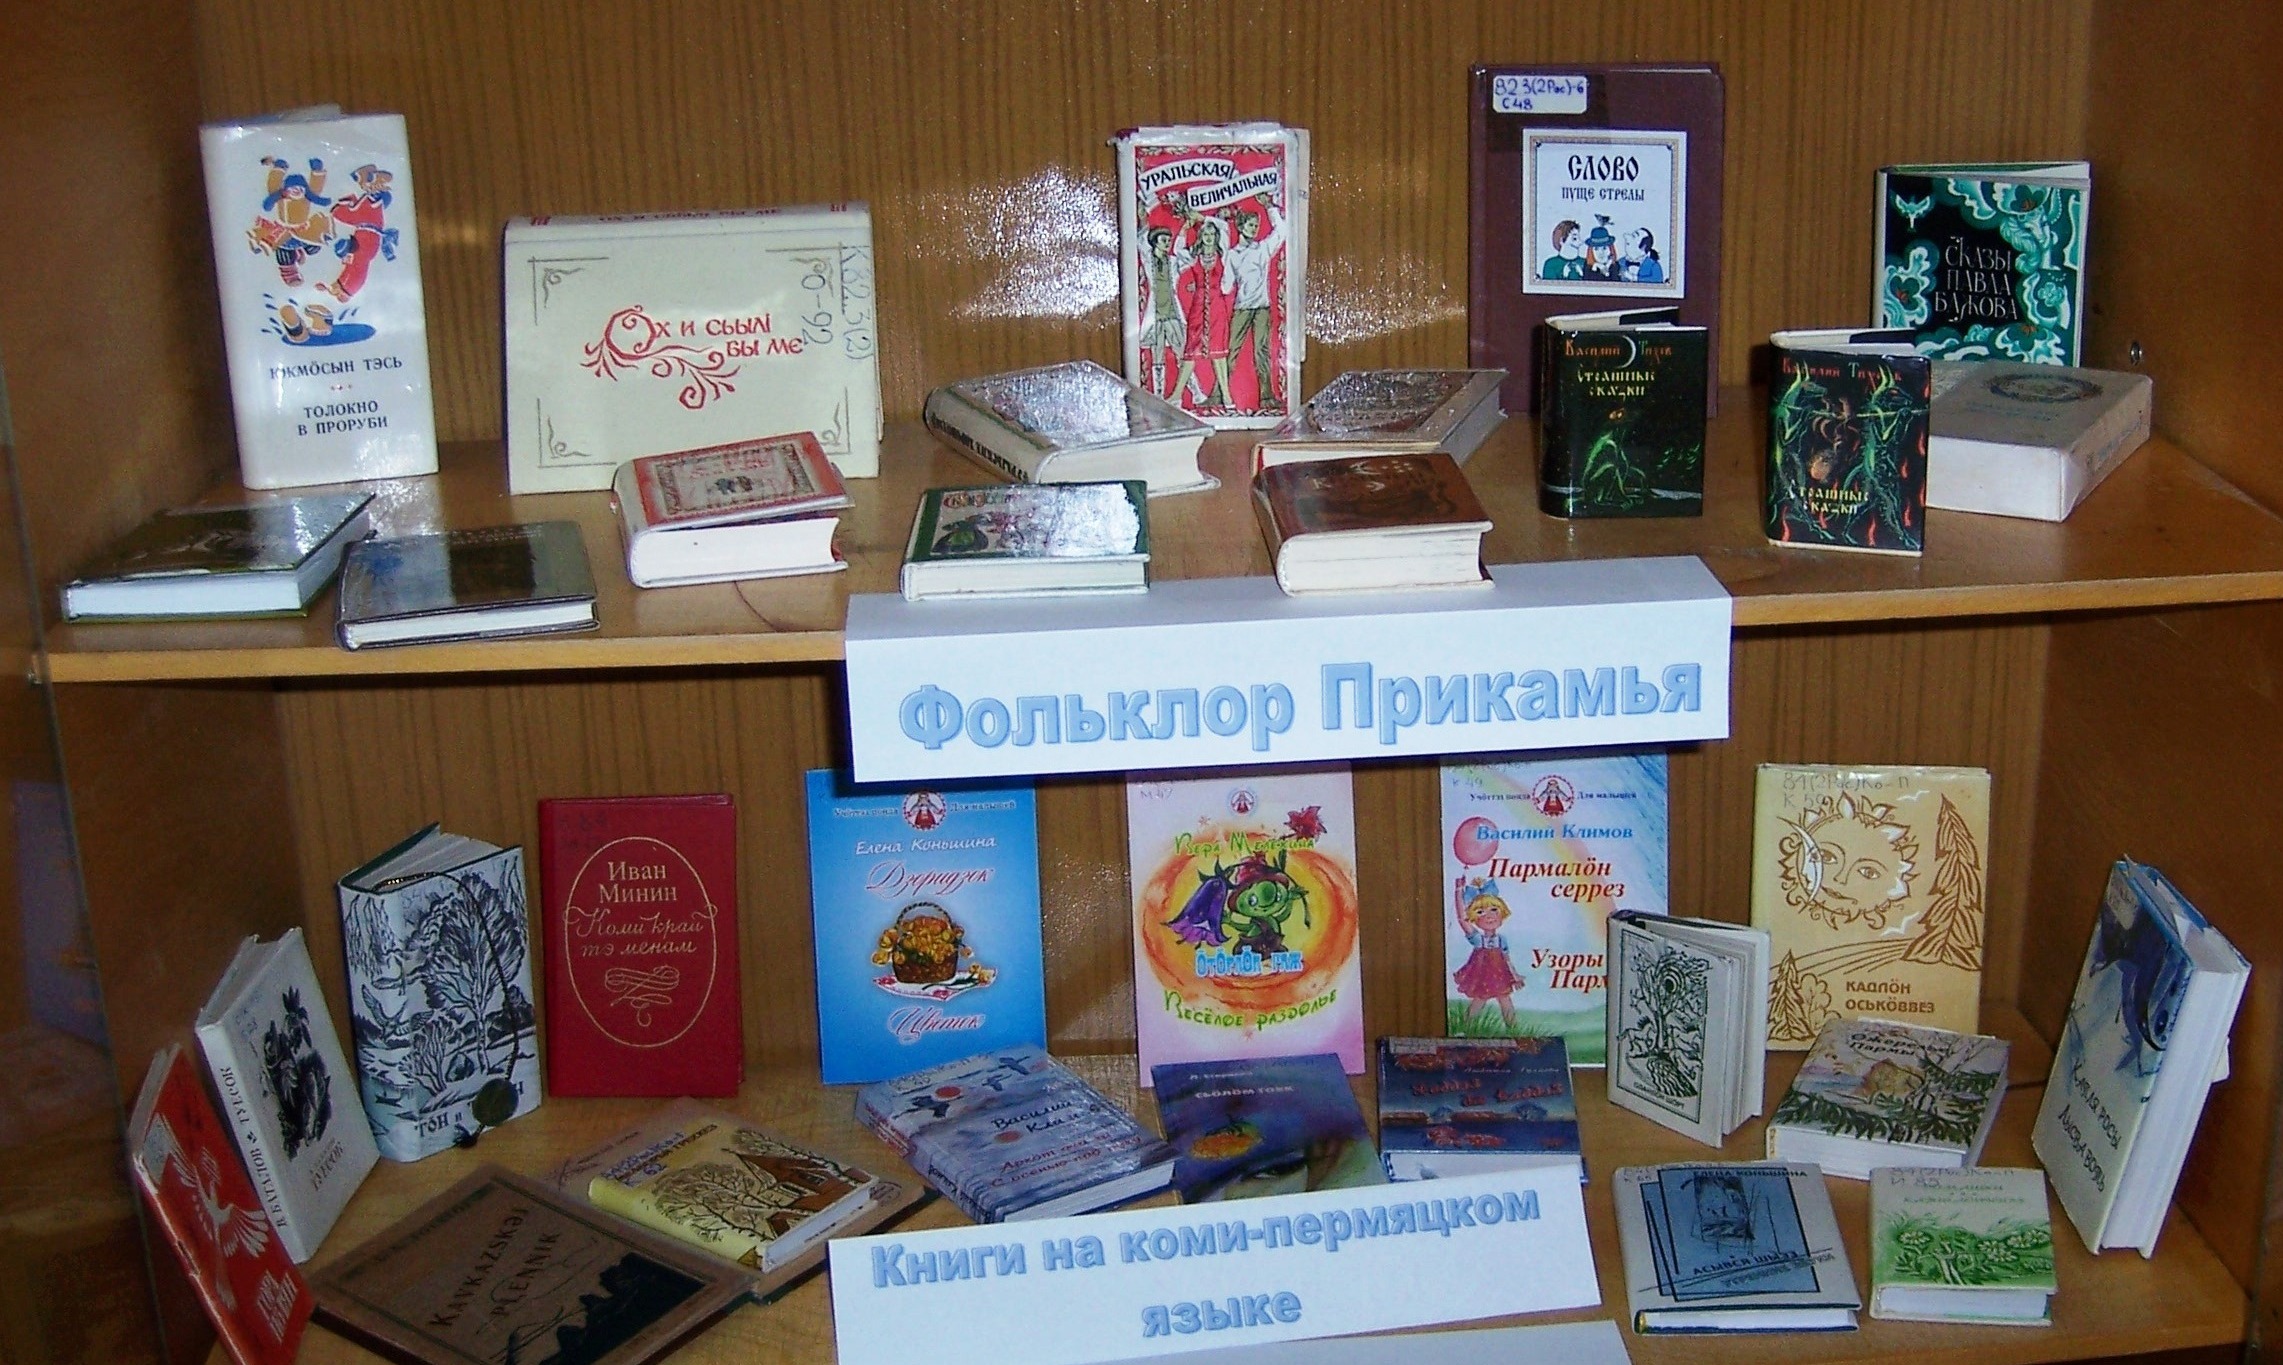 Фрагмент выставки миниатюрной книги. Фольклор и книги на коми-пермяцком языке